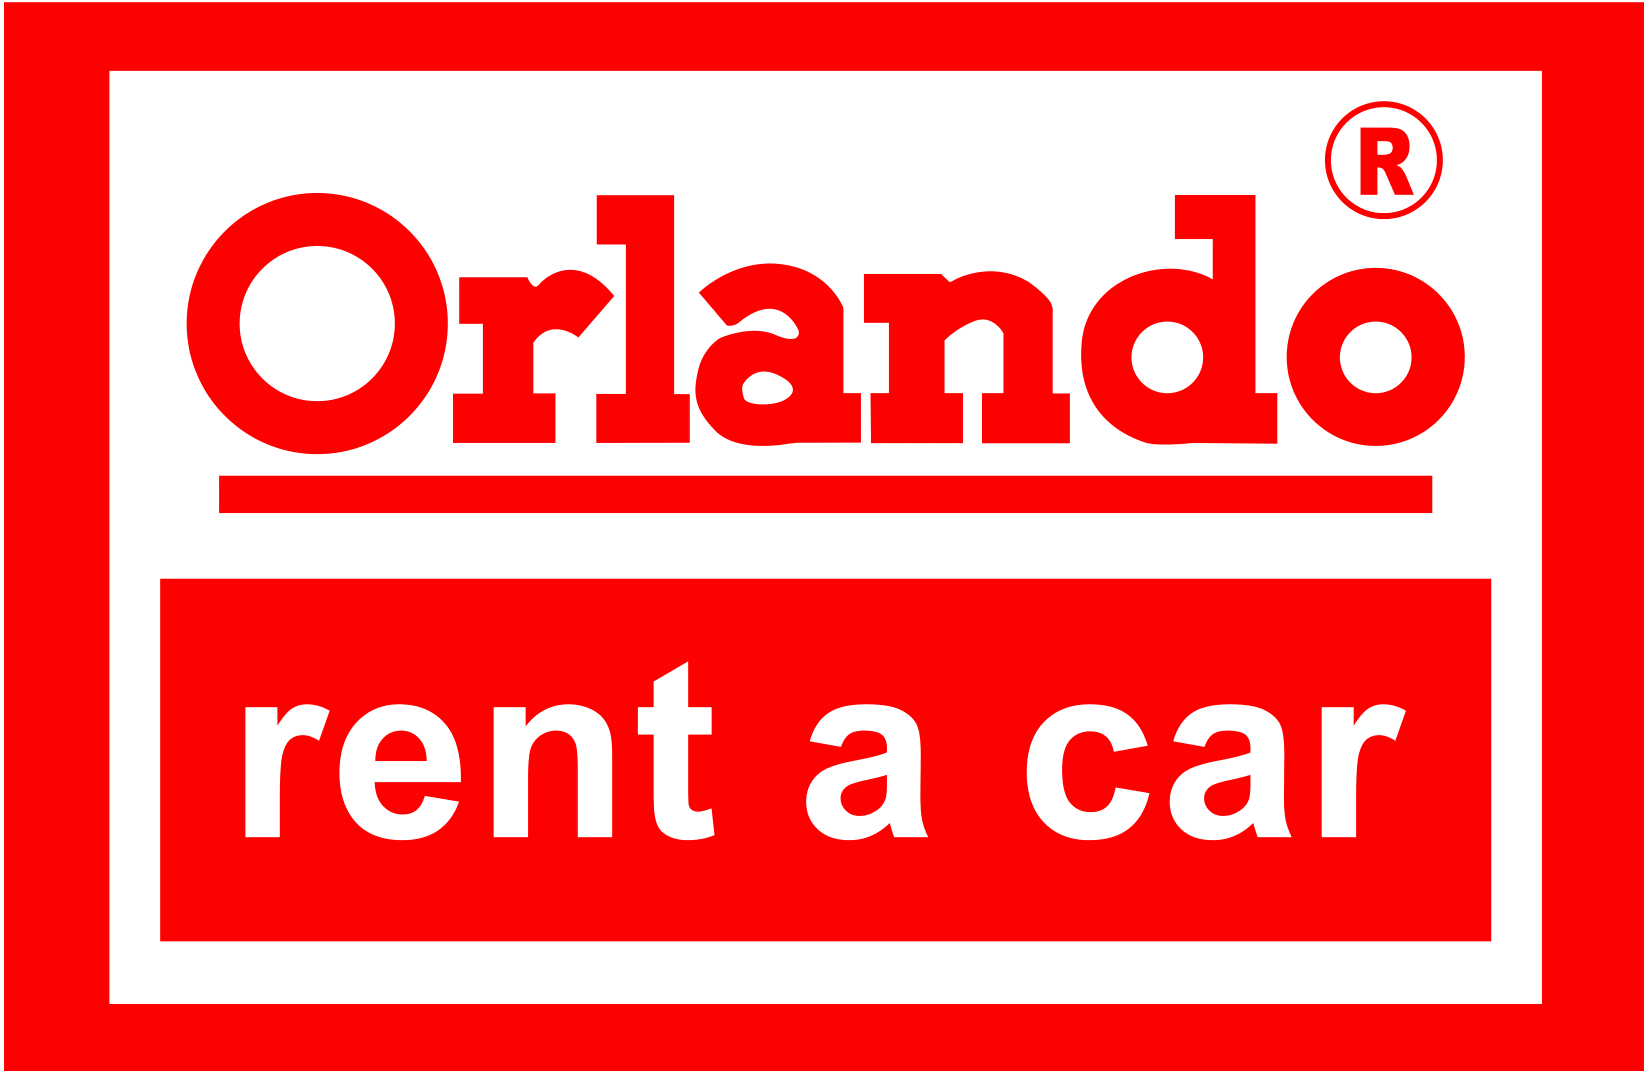 Orlando Rent a car